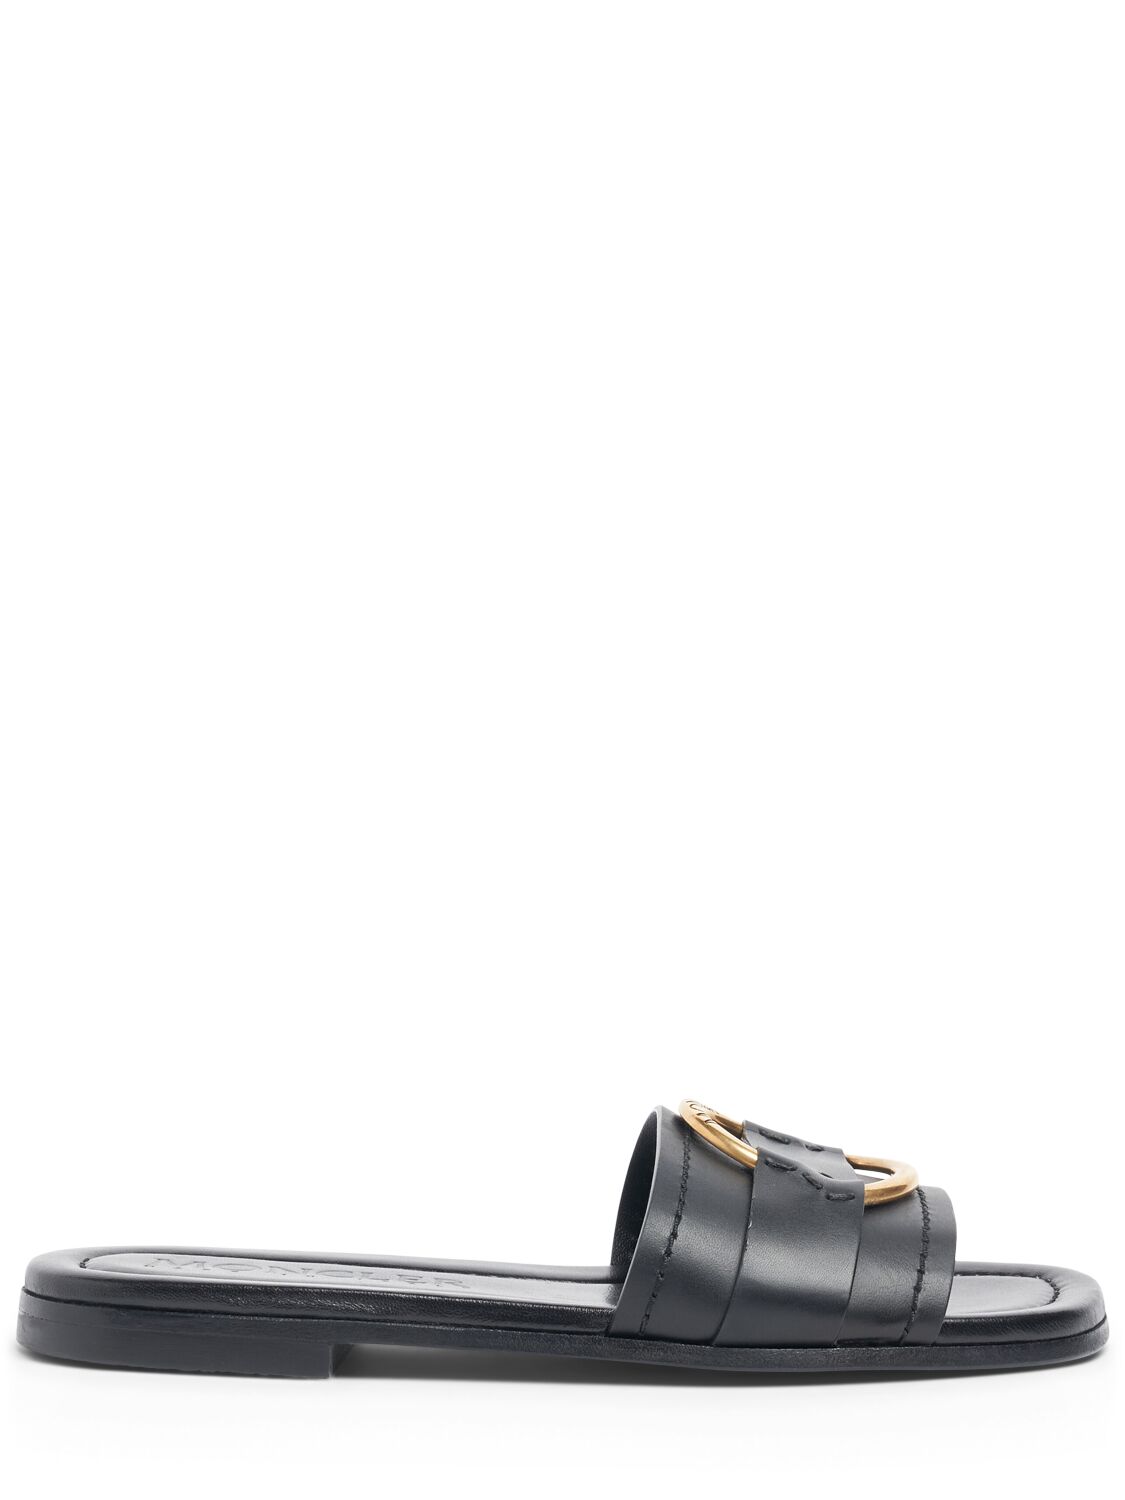 Moncler 15mm Bell Leather Slide Sandals In Black